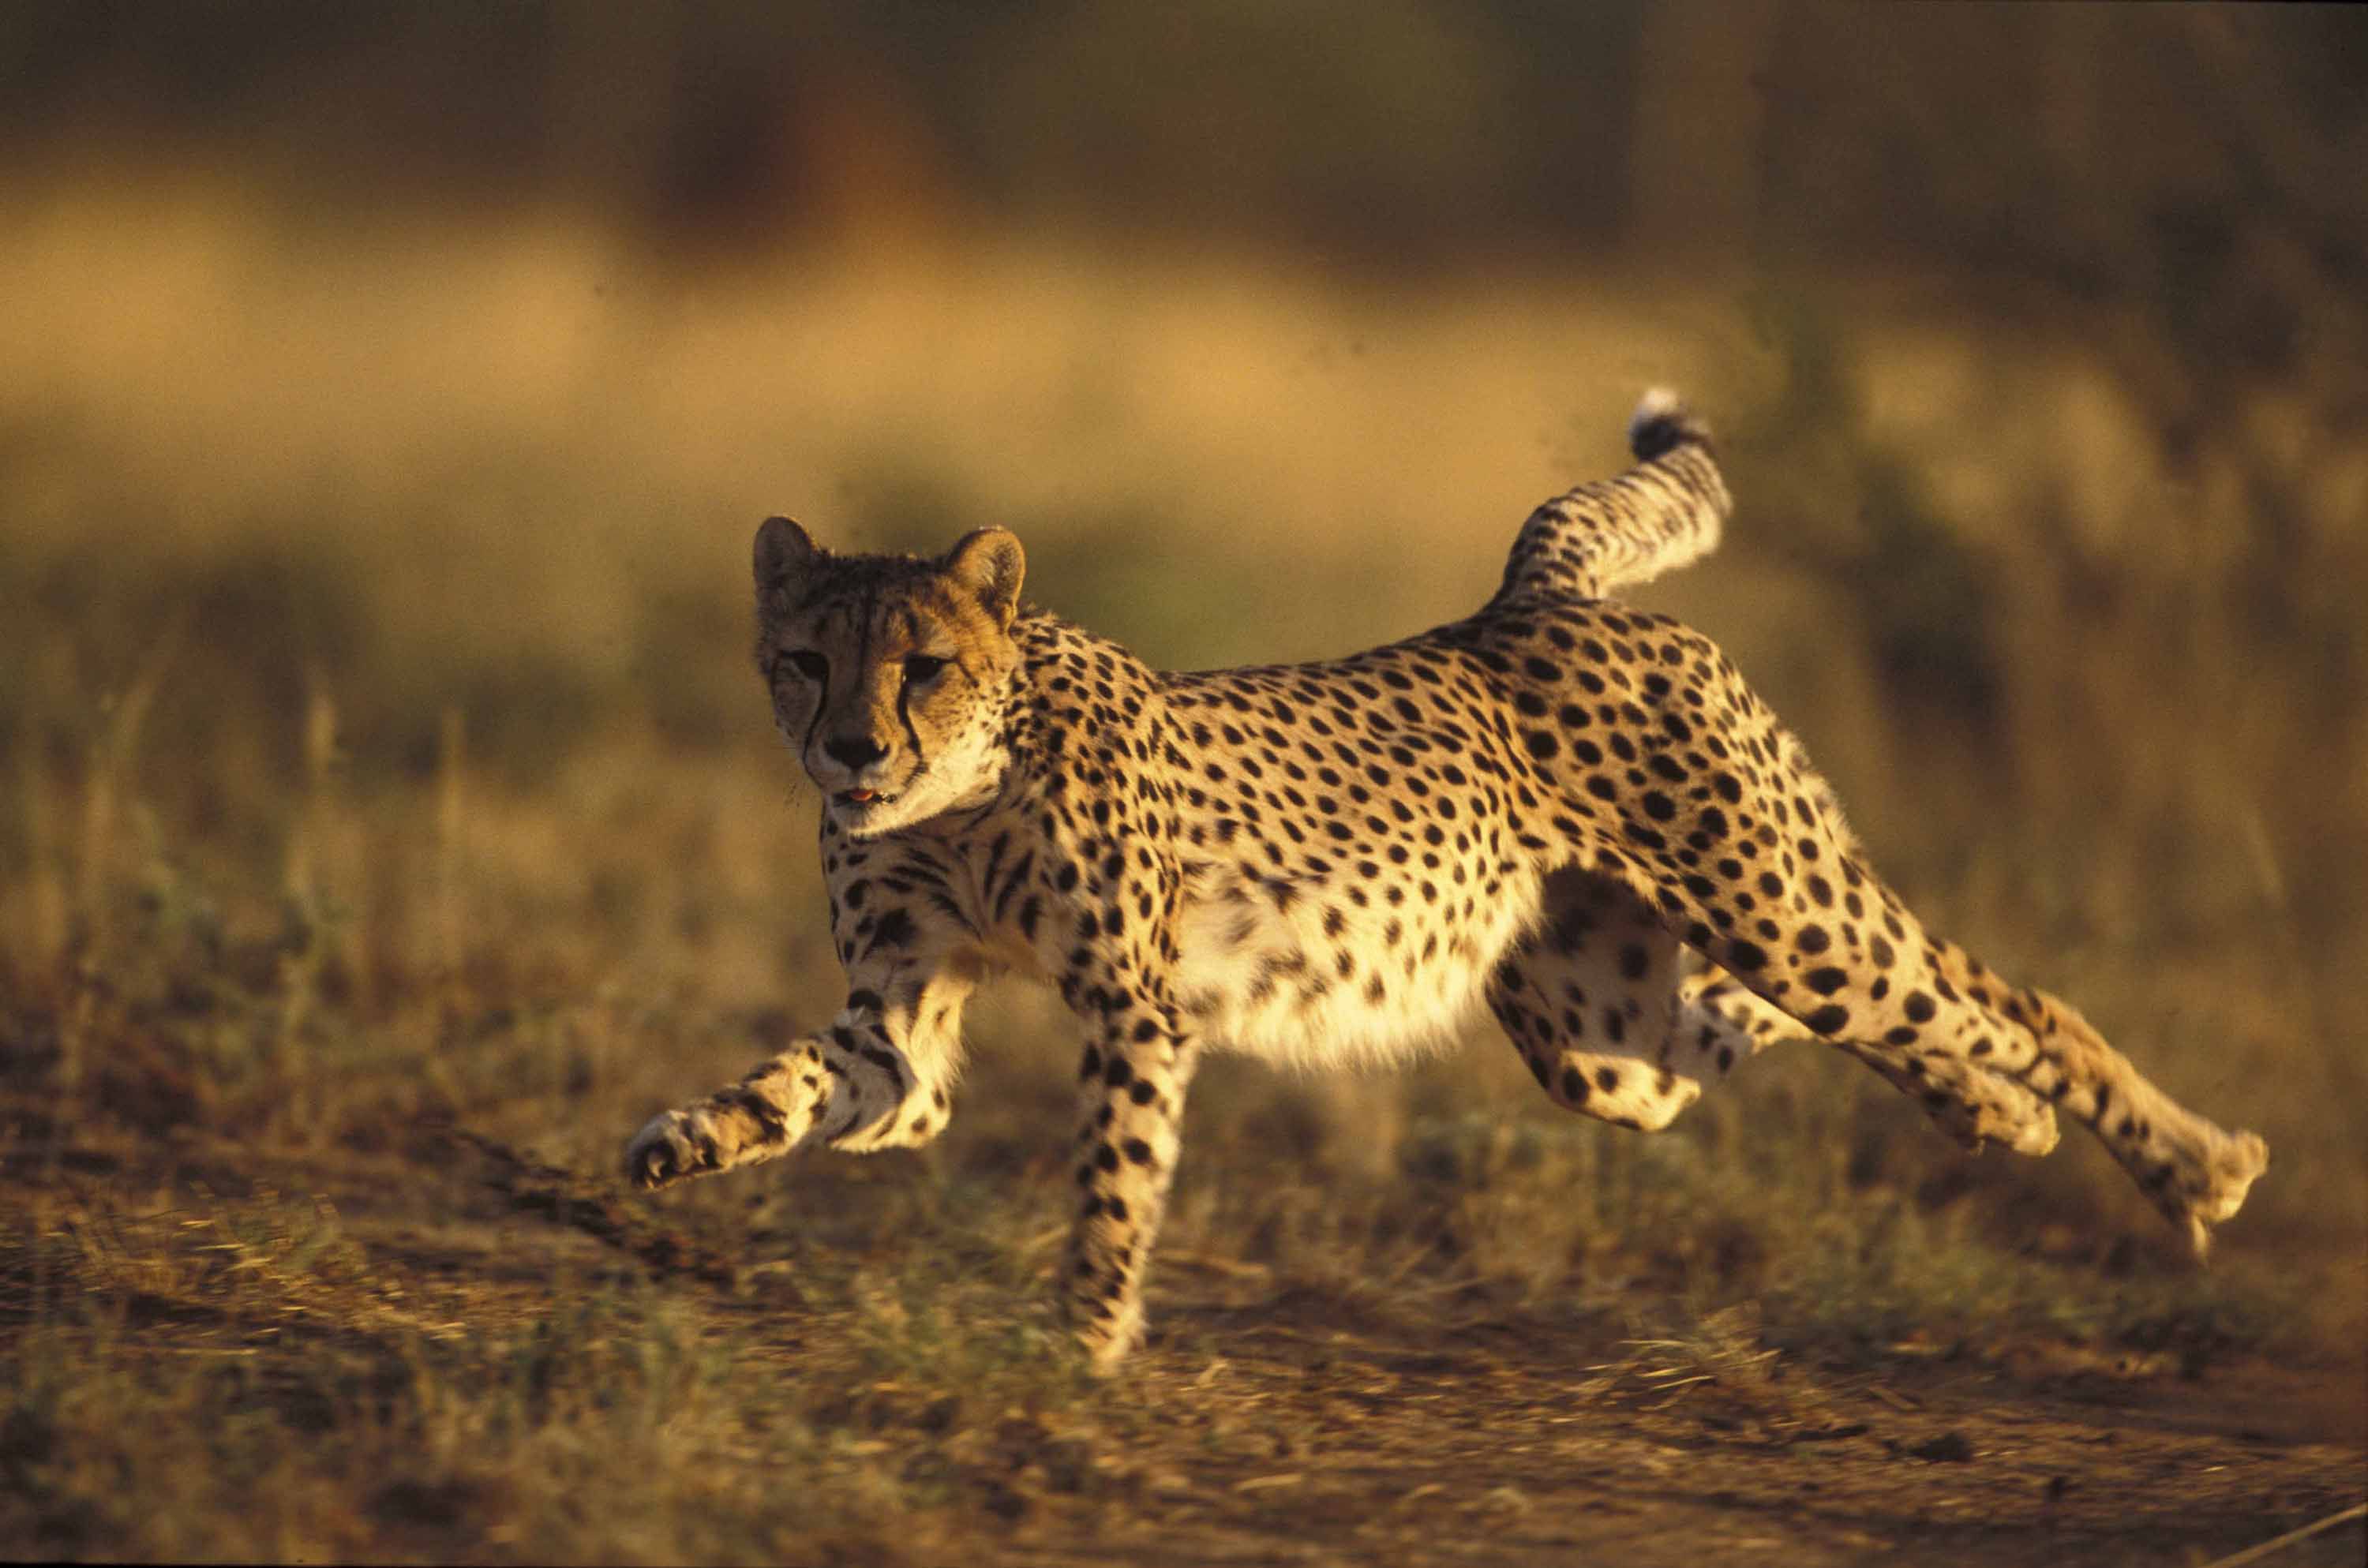 running | Animals Zoo Park: Cheetah Running Pictures, Cheetah ...